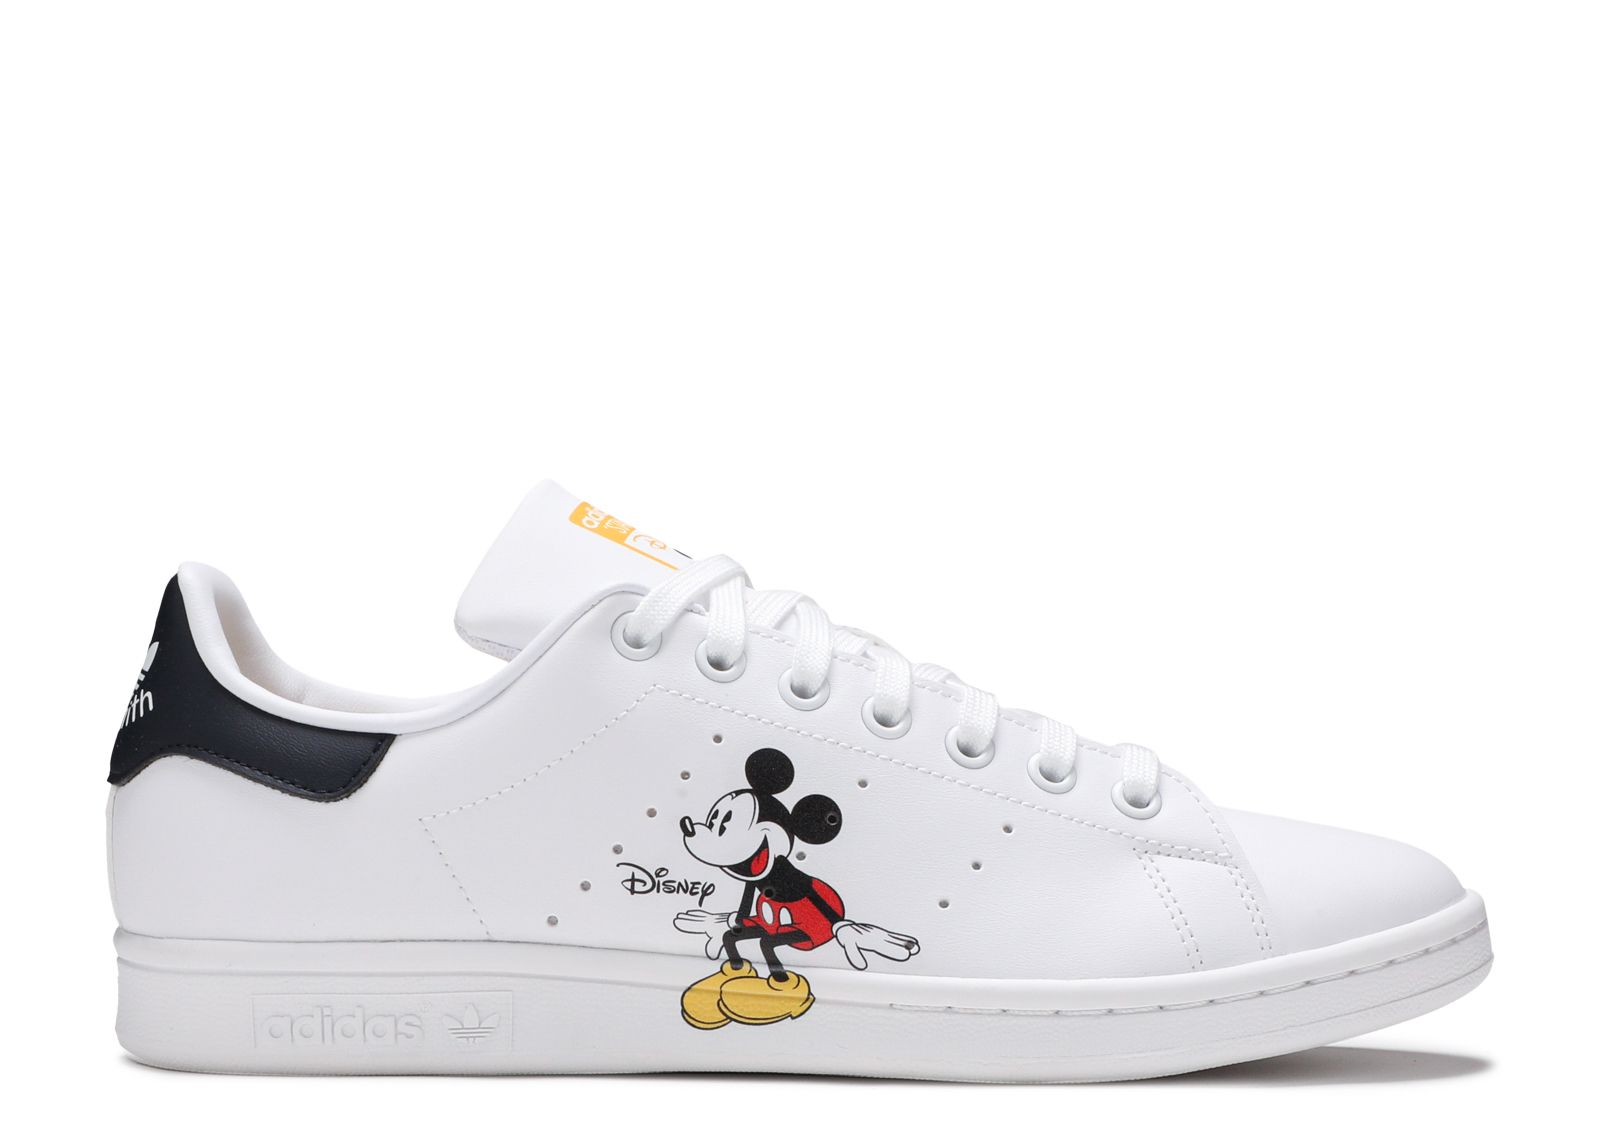 Consumeren Ik was verrast Immuniseren Disney X Stan Smith 'Mickey And Minnie Mouse' - Adidas - GW2250 - cloud  white/cloud white/legend ink | Flight Club